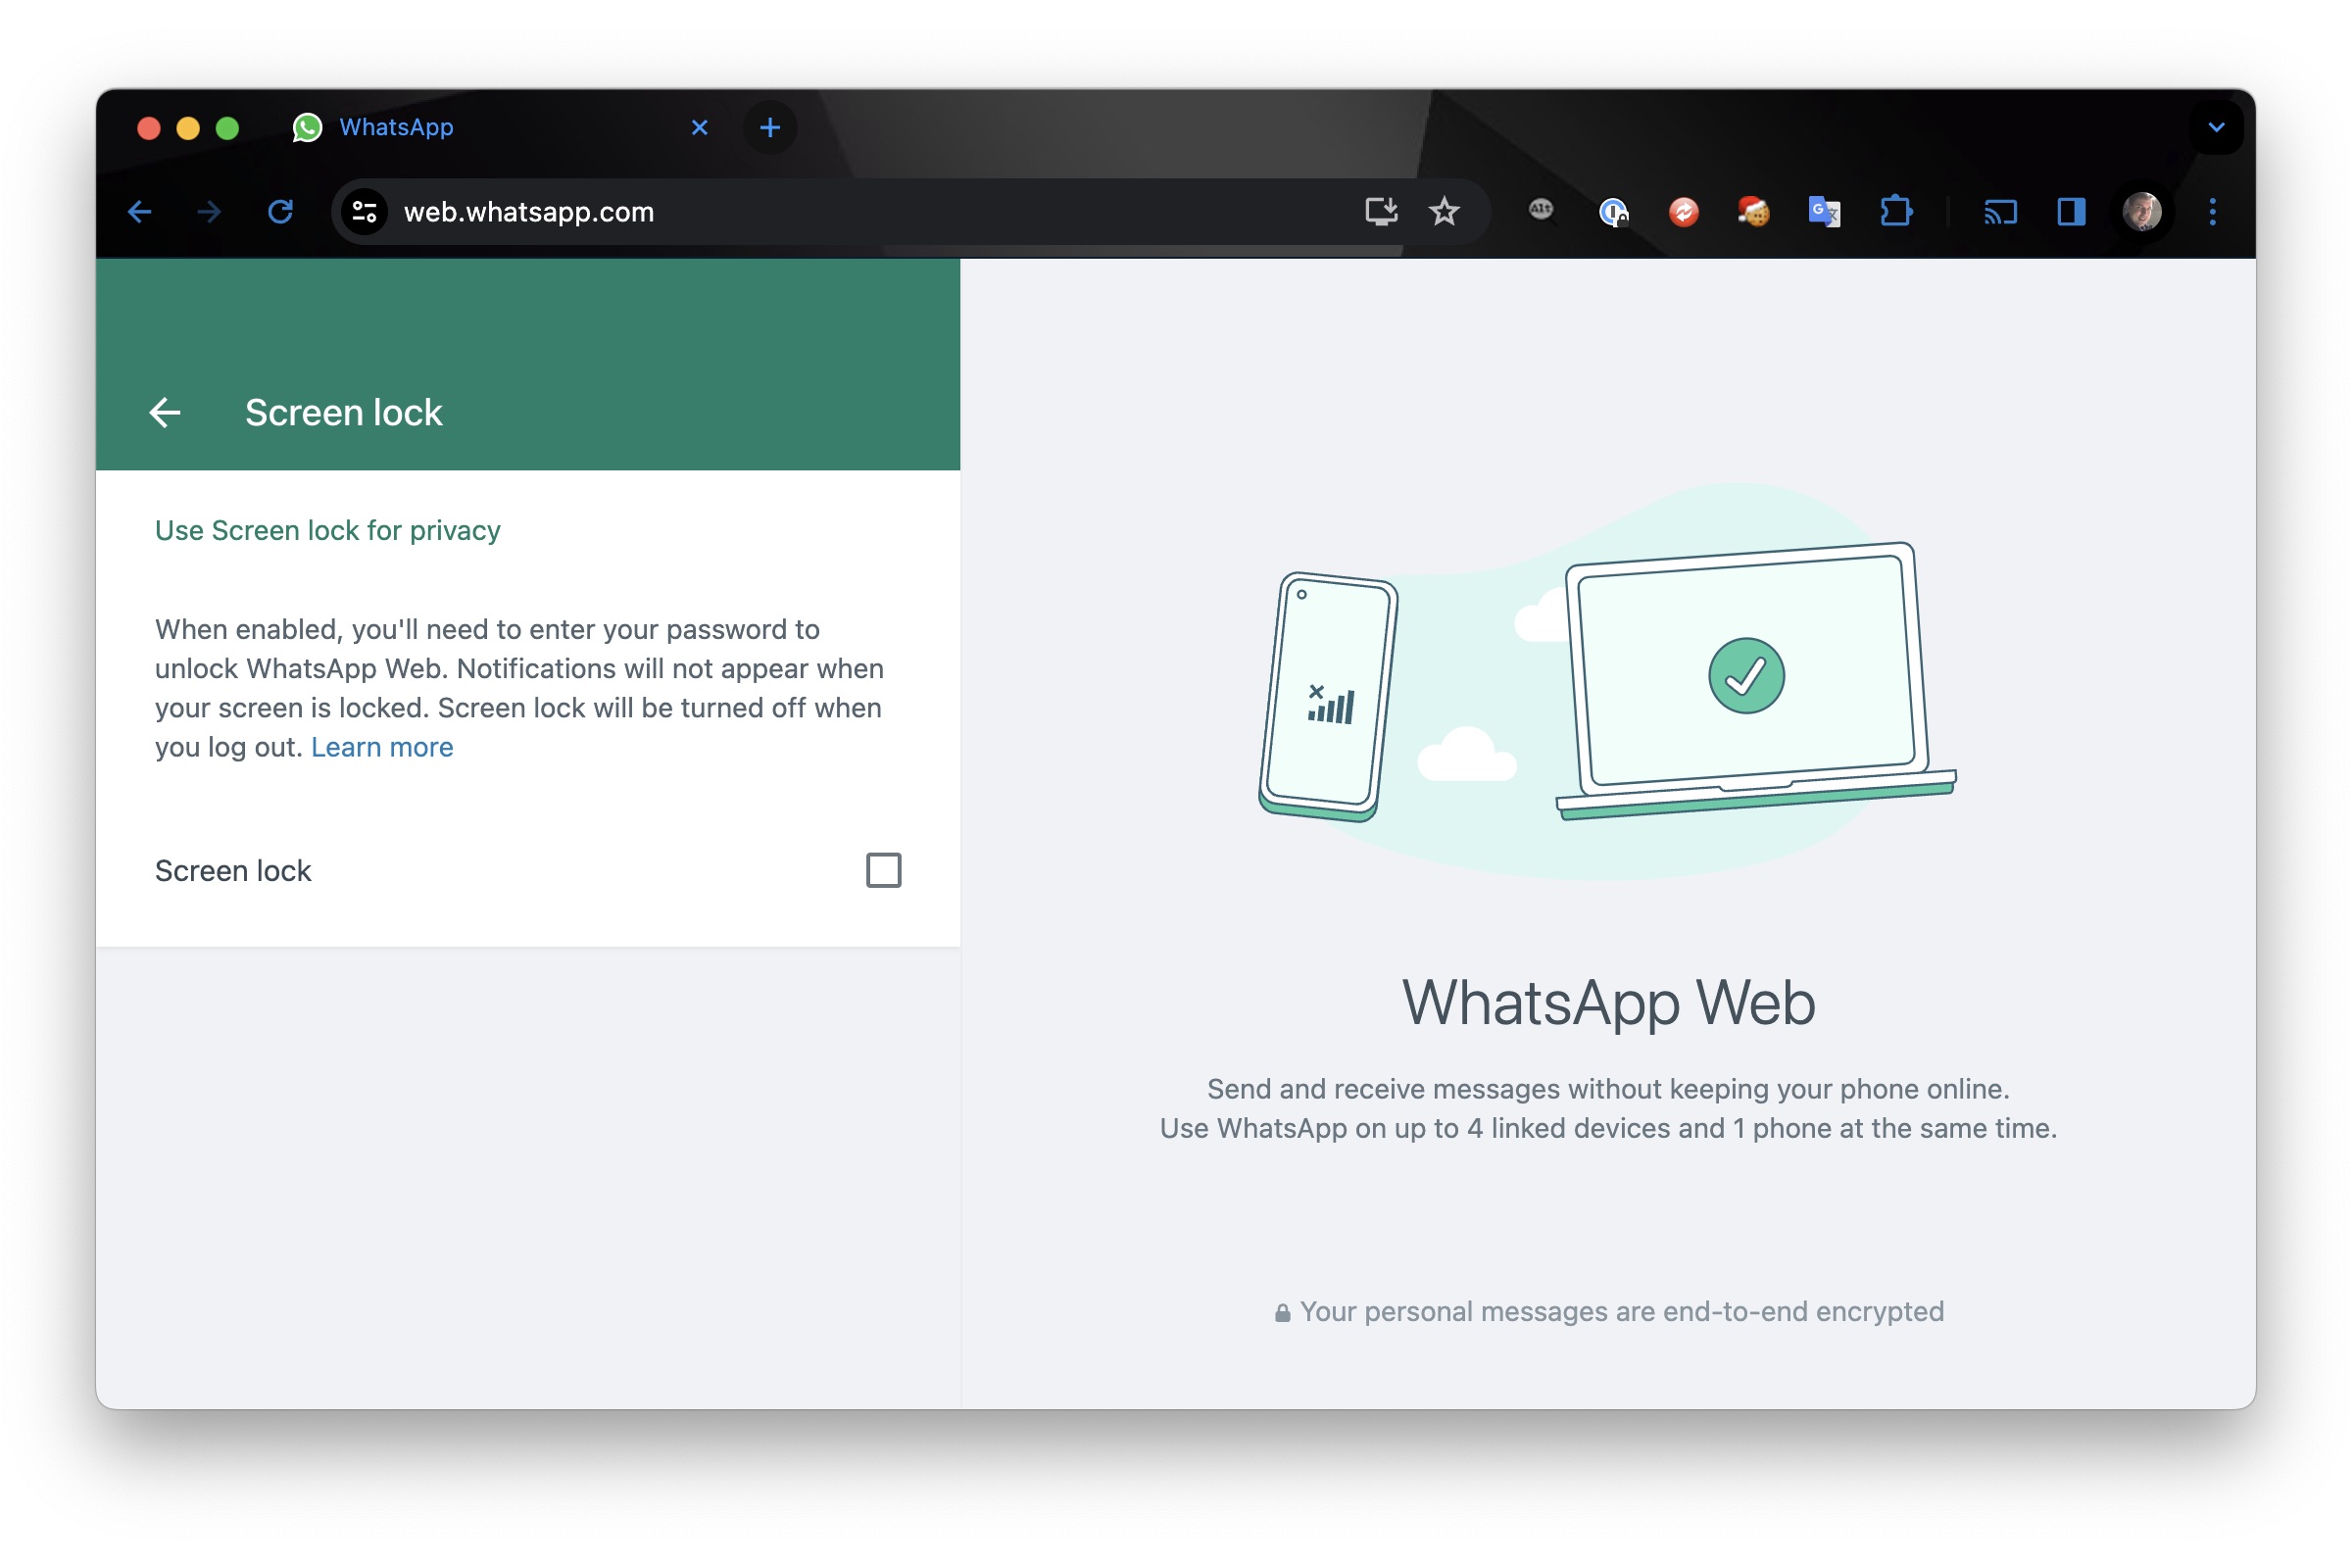 WhatsApp Web screen lock settings in Chrome